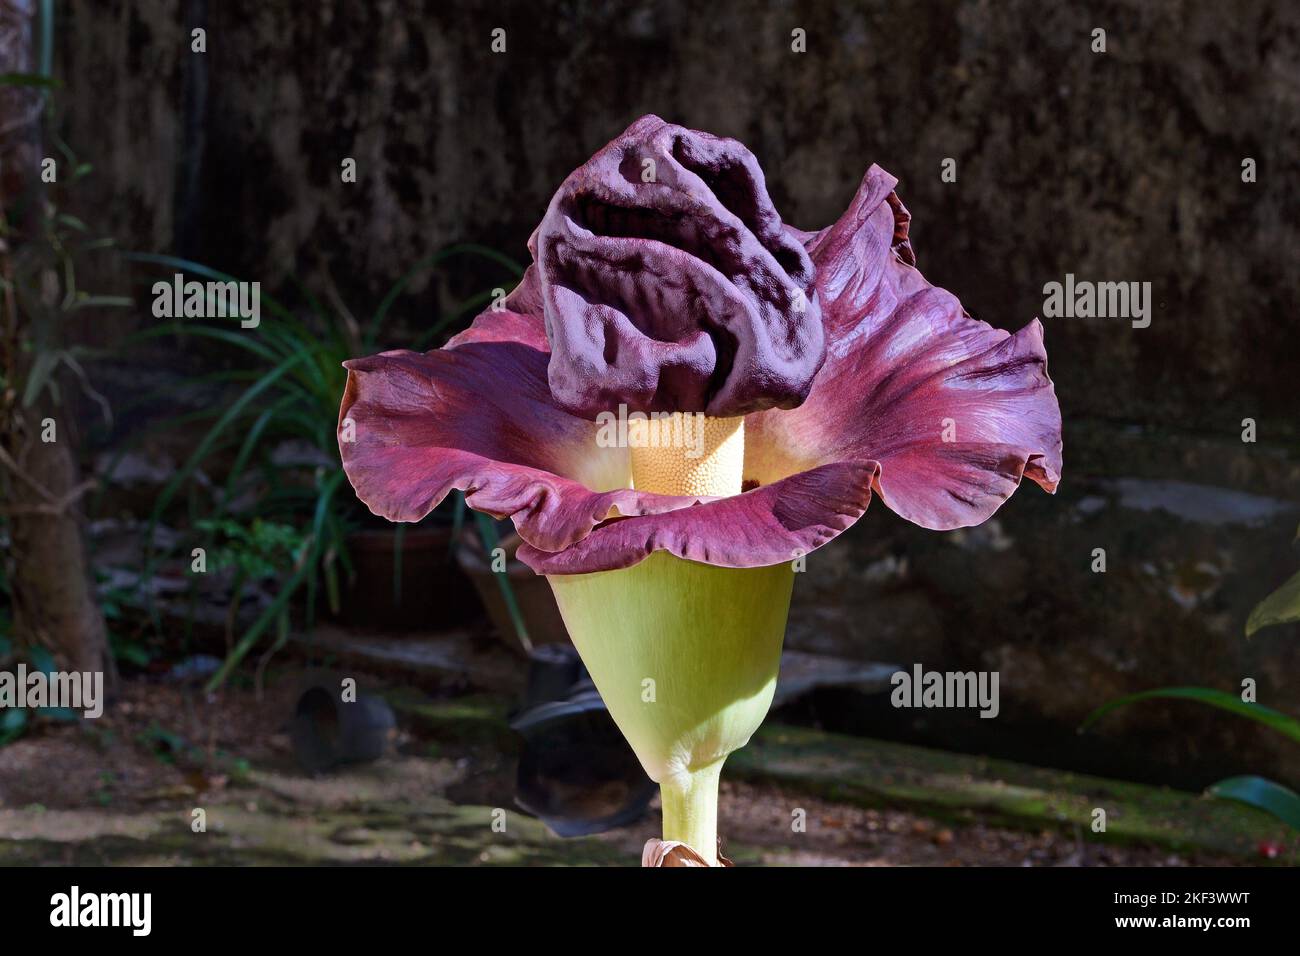 Fleur géante de l'igname de pied d'éléphant, arum géant de la marmite blanche, Amorphophallus paeoniifolius, Thiruvananthapuram, Kerala, Inde Banque D'Images